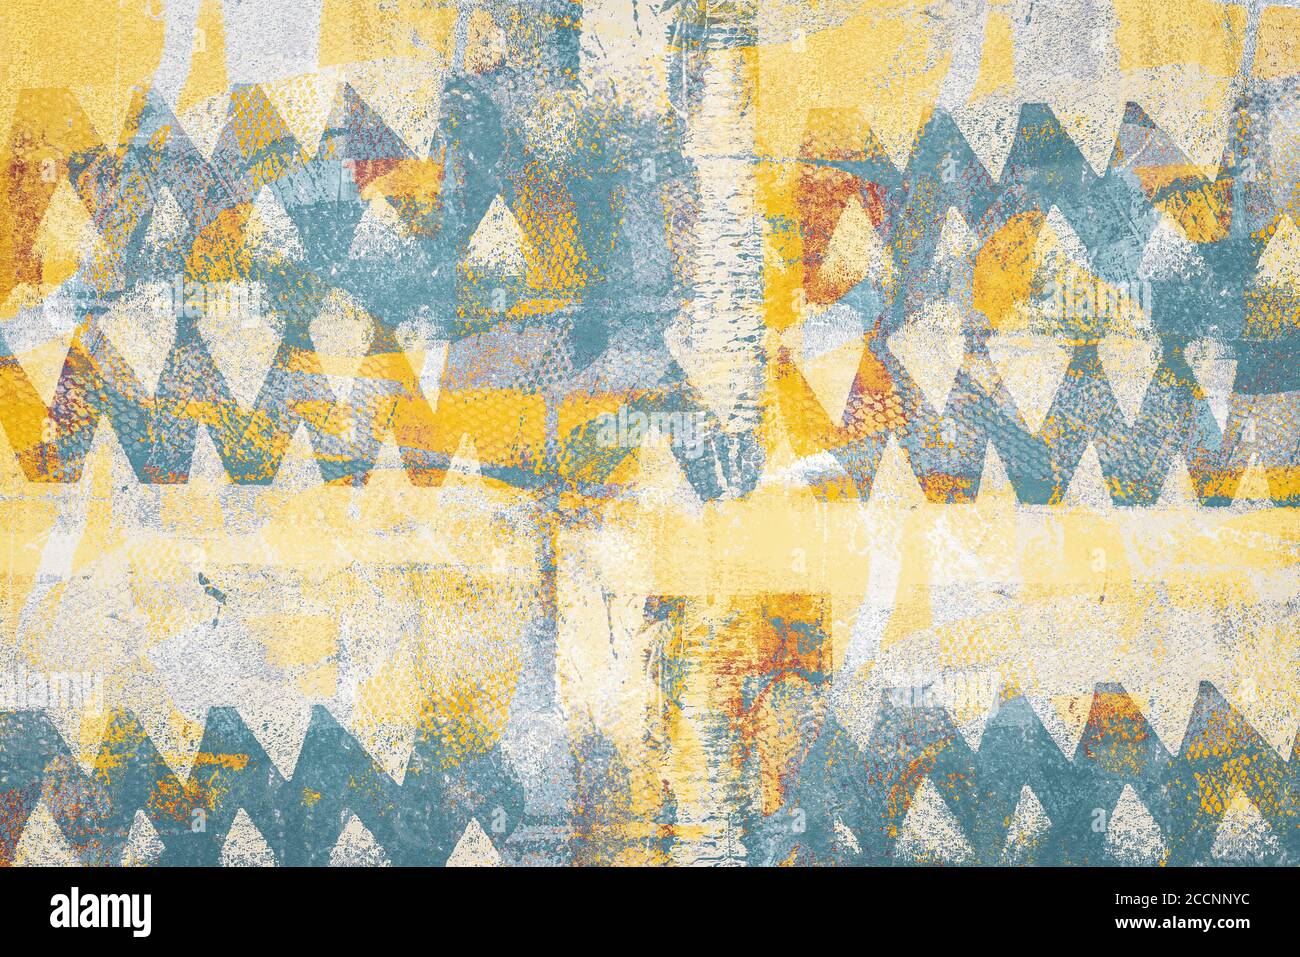 Supporti misti sfondo creativo fatto di forme geometriche testurizzate in toni blu-giallo Foto Stock